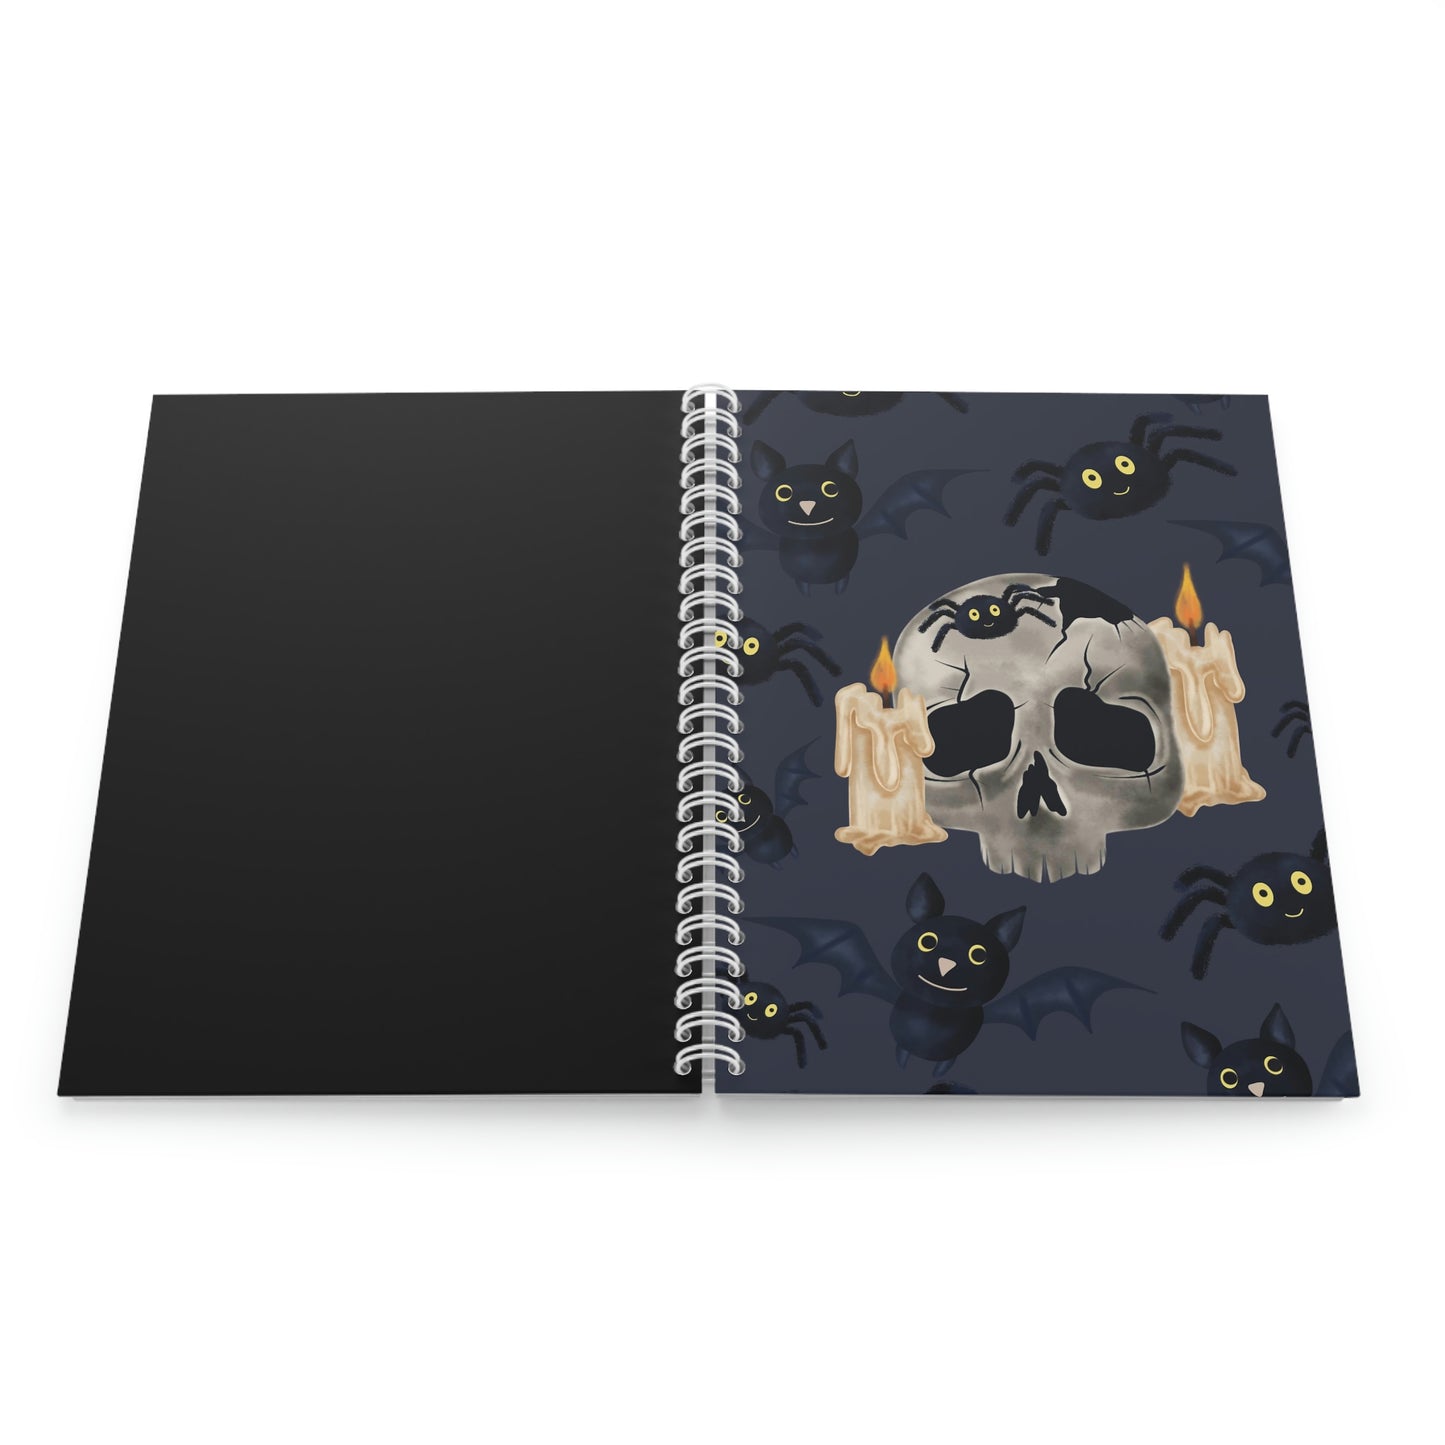 Skull & Bats Spiral Notebook